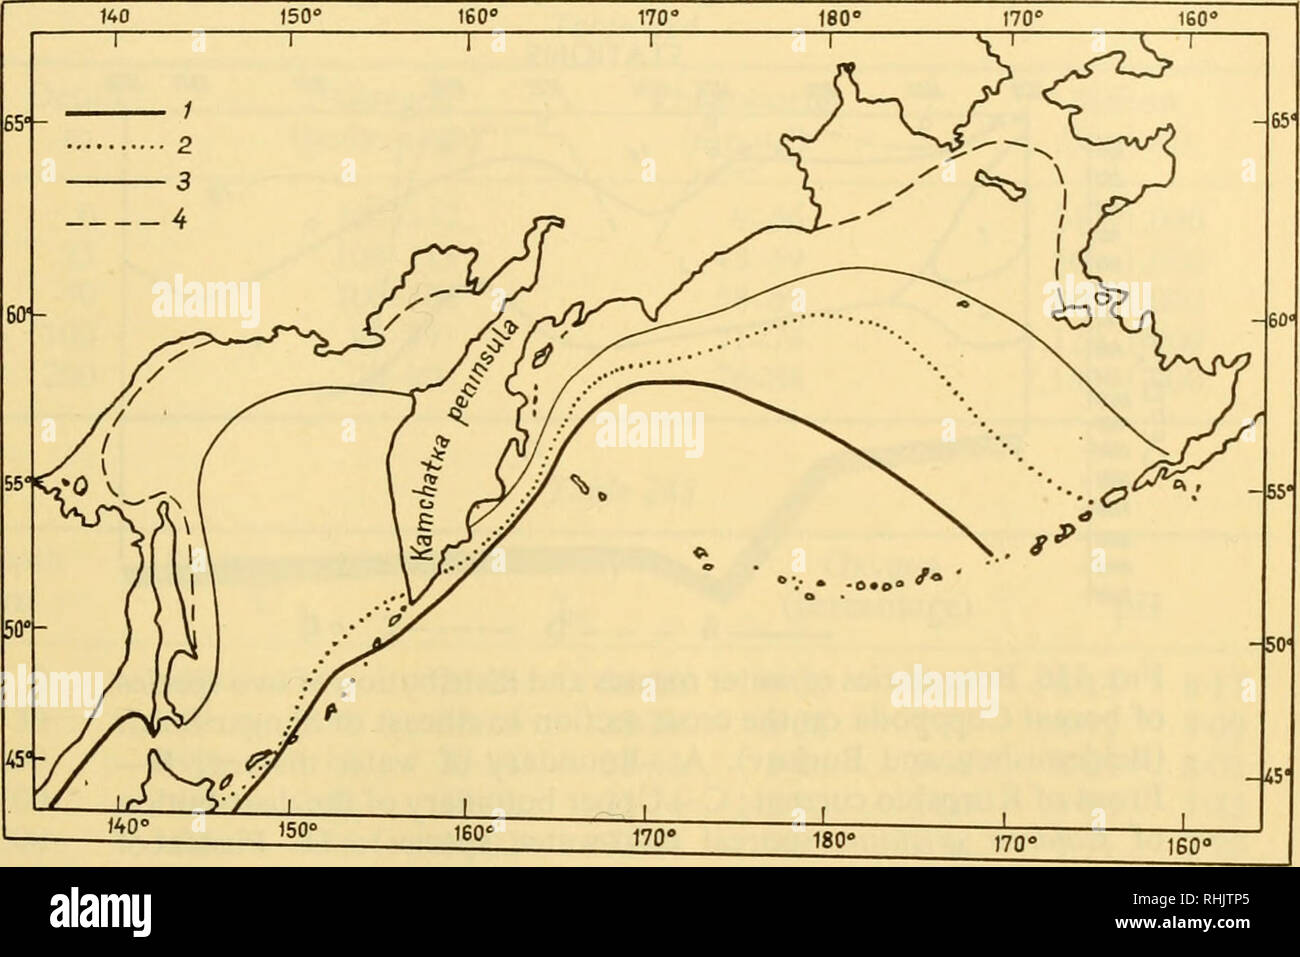 . Biología de los mares de la U.R.S.S. Biología marina -- Unión Soviética; Hidrología -- Unión Soviética. Características generales de los Mares Orientales 697 hay hielo en la parte norte del estrecho de Tartaria. El hielo se lleva a cabo en el océano a través de las Kuriles estrecho y a lo largo de la costa de Kamchatka. Grandes zonas del Mar de Ojotsk y de Bering están cubiertas con hielo durante casi ocho meses. En cuanto a los otros mares de la u.s.s.r, este fenómeno se encuentra sólo en aquellos fuera de la costa siberiana. La salinidad de los Mares Orientales (aparte de su litoral y en las desembocaduras de los ríos) no purif Foto de stock